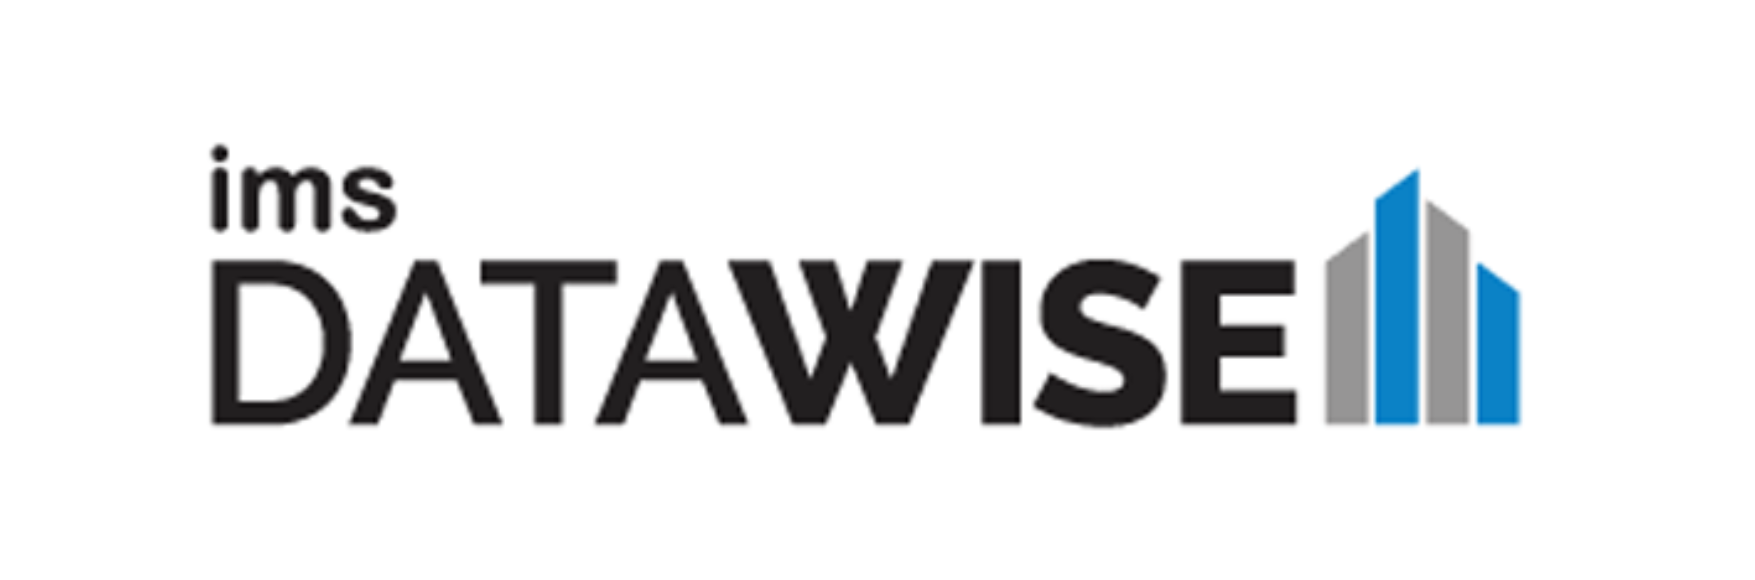 IMS Datawise logo